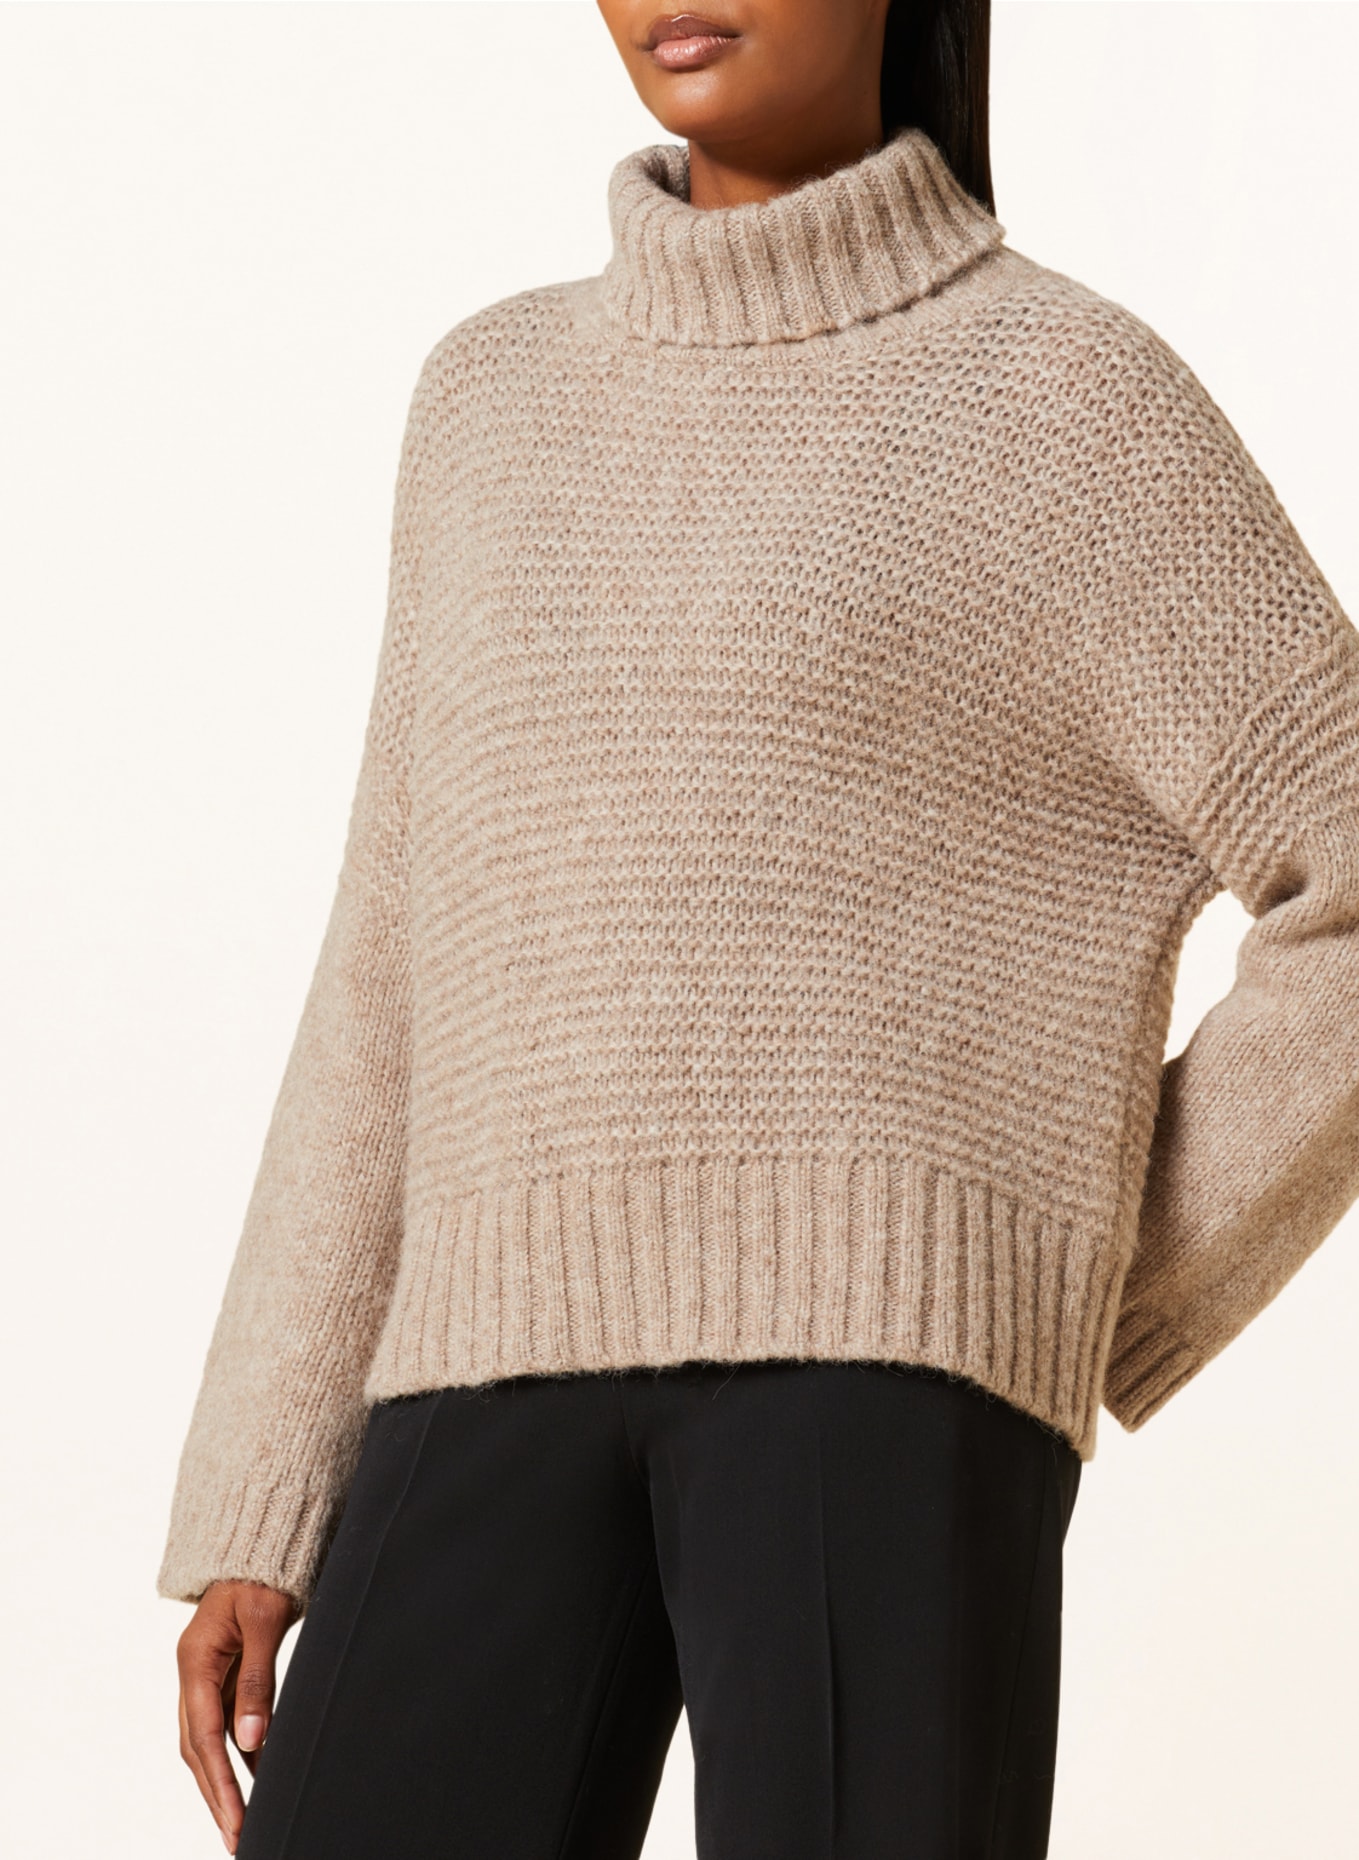 ANTONELLI firenze Turtleneck sweater AOSTA made of alpaca, Color: BEIGE (Image 4)